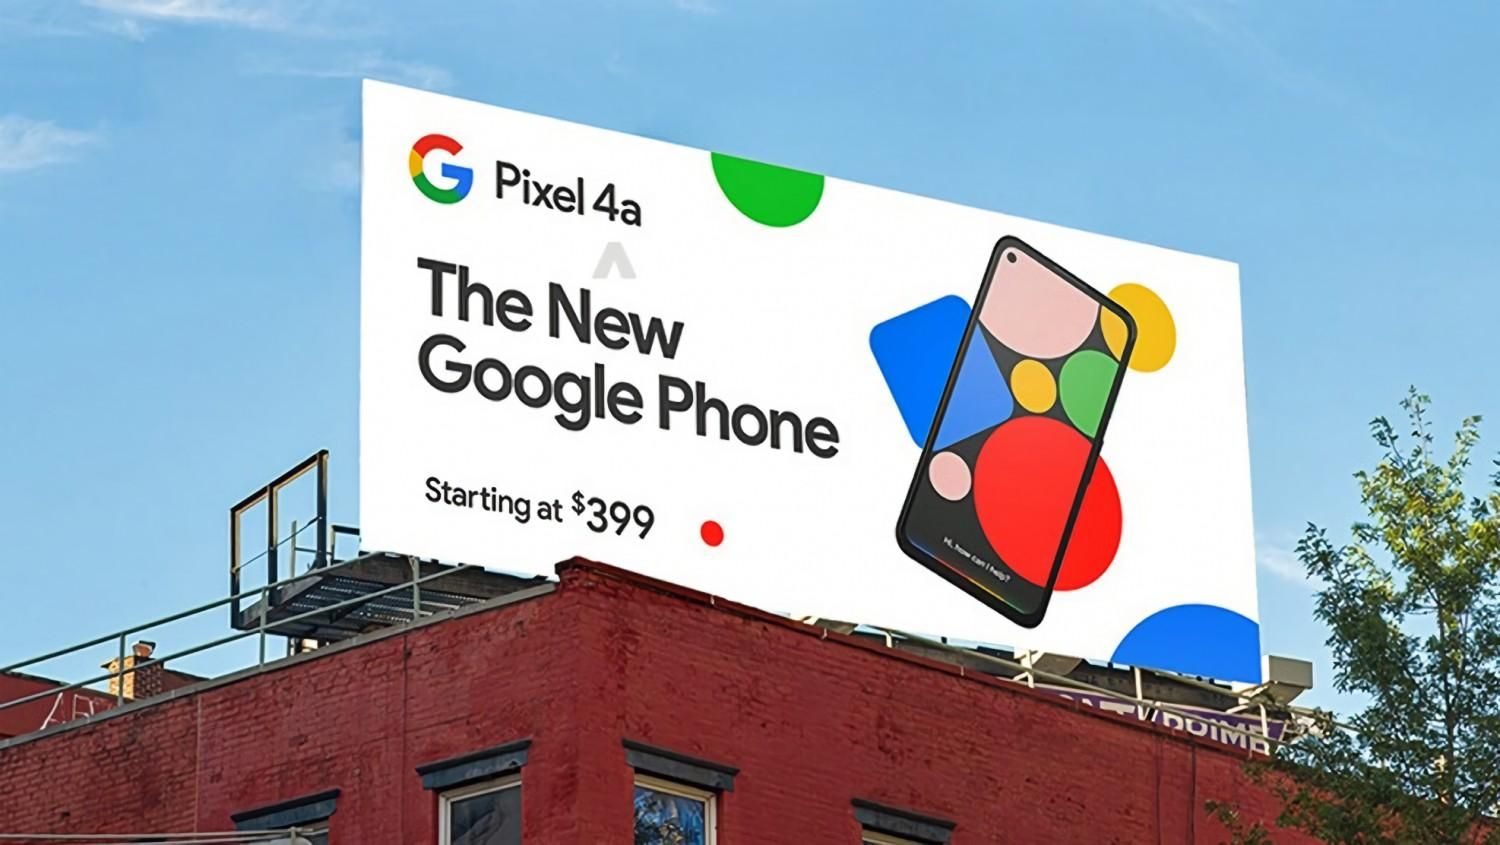 Подробные характеристики и фото смартфона Google Pixel 4a опубликовали в сети